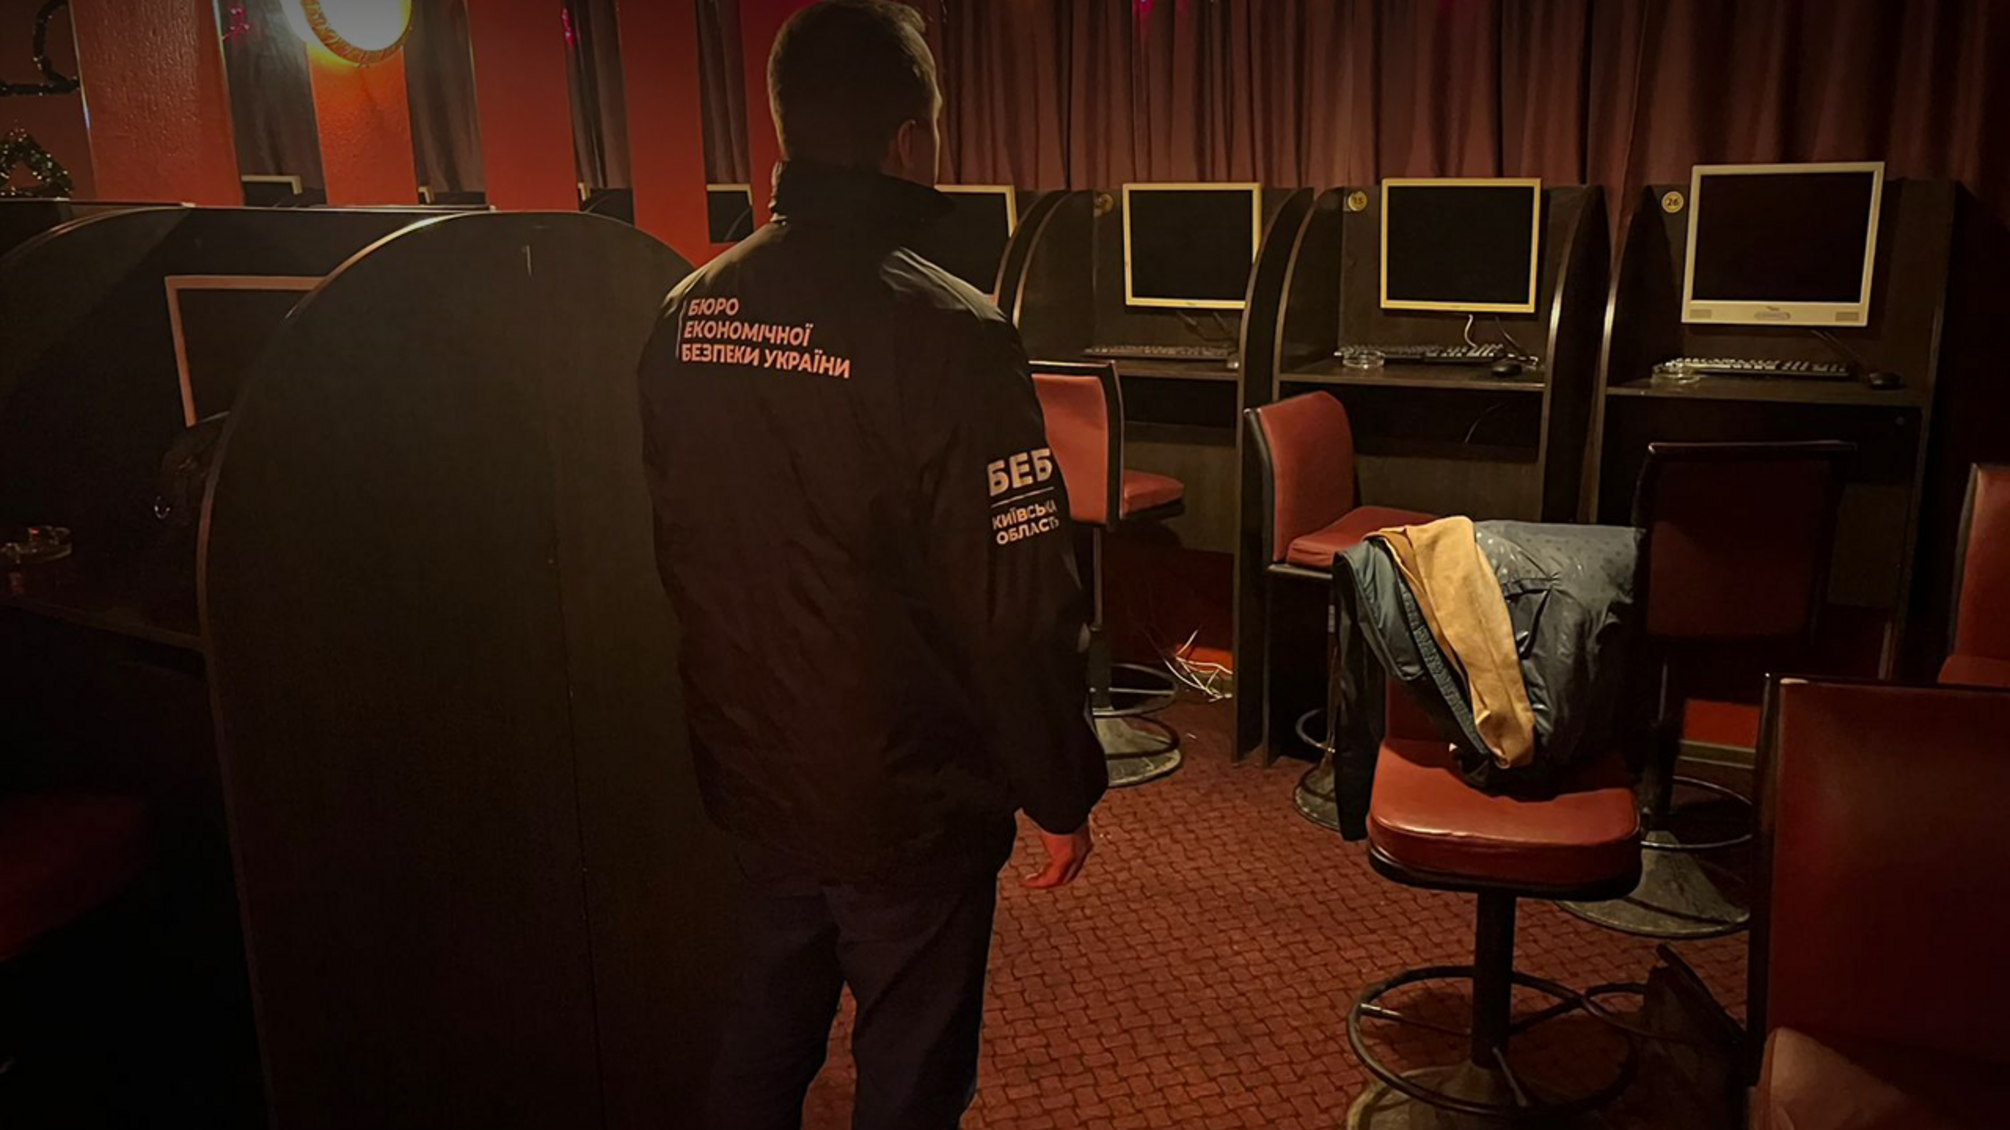 Мінус ще 4 казино на Київщині: БЕБ припинило незаконну діяльність гральних зал